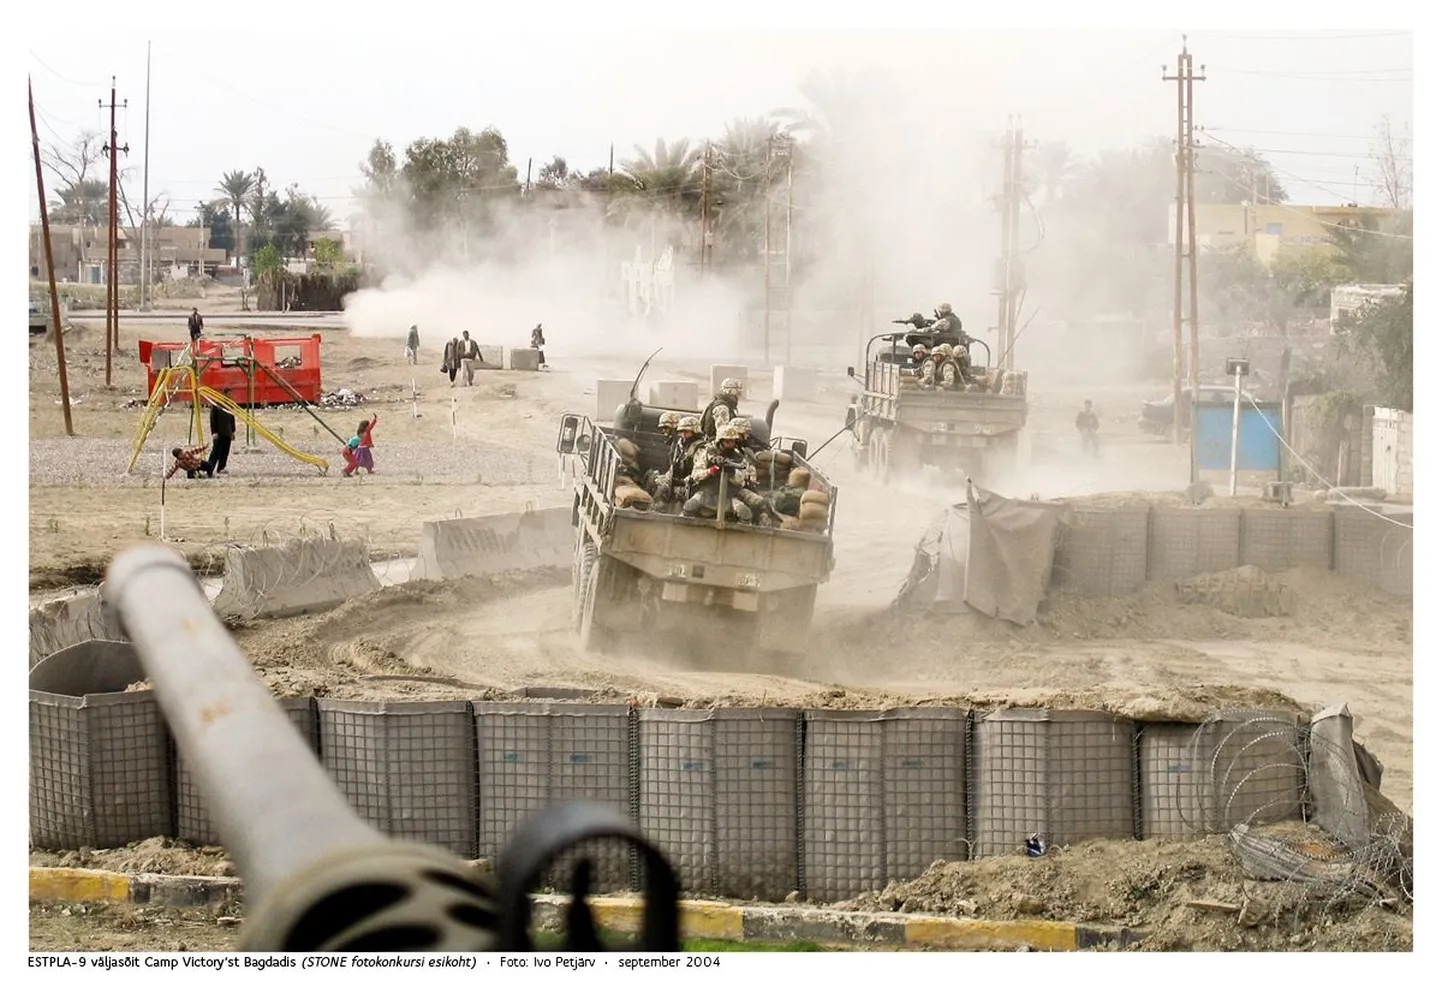 Võidufotoks valiti pilt, millel on kujutatud ESTPLA-9 patrulli väljasõitu Bagdadist Camp Victoryst.